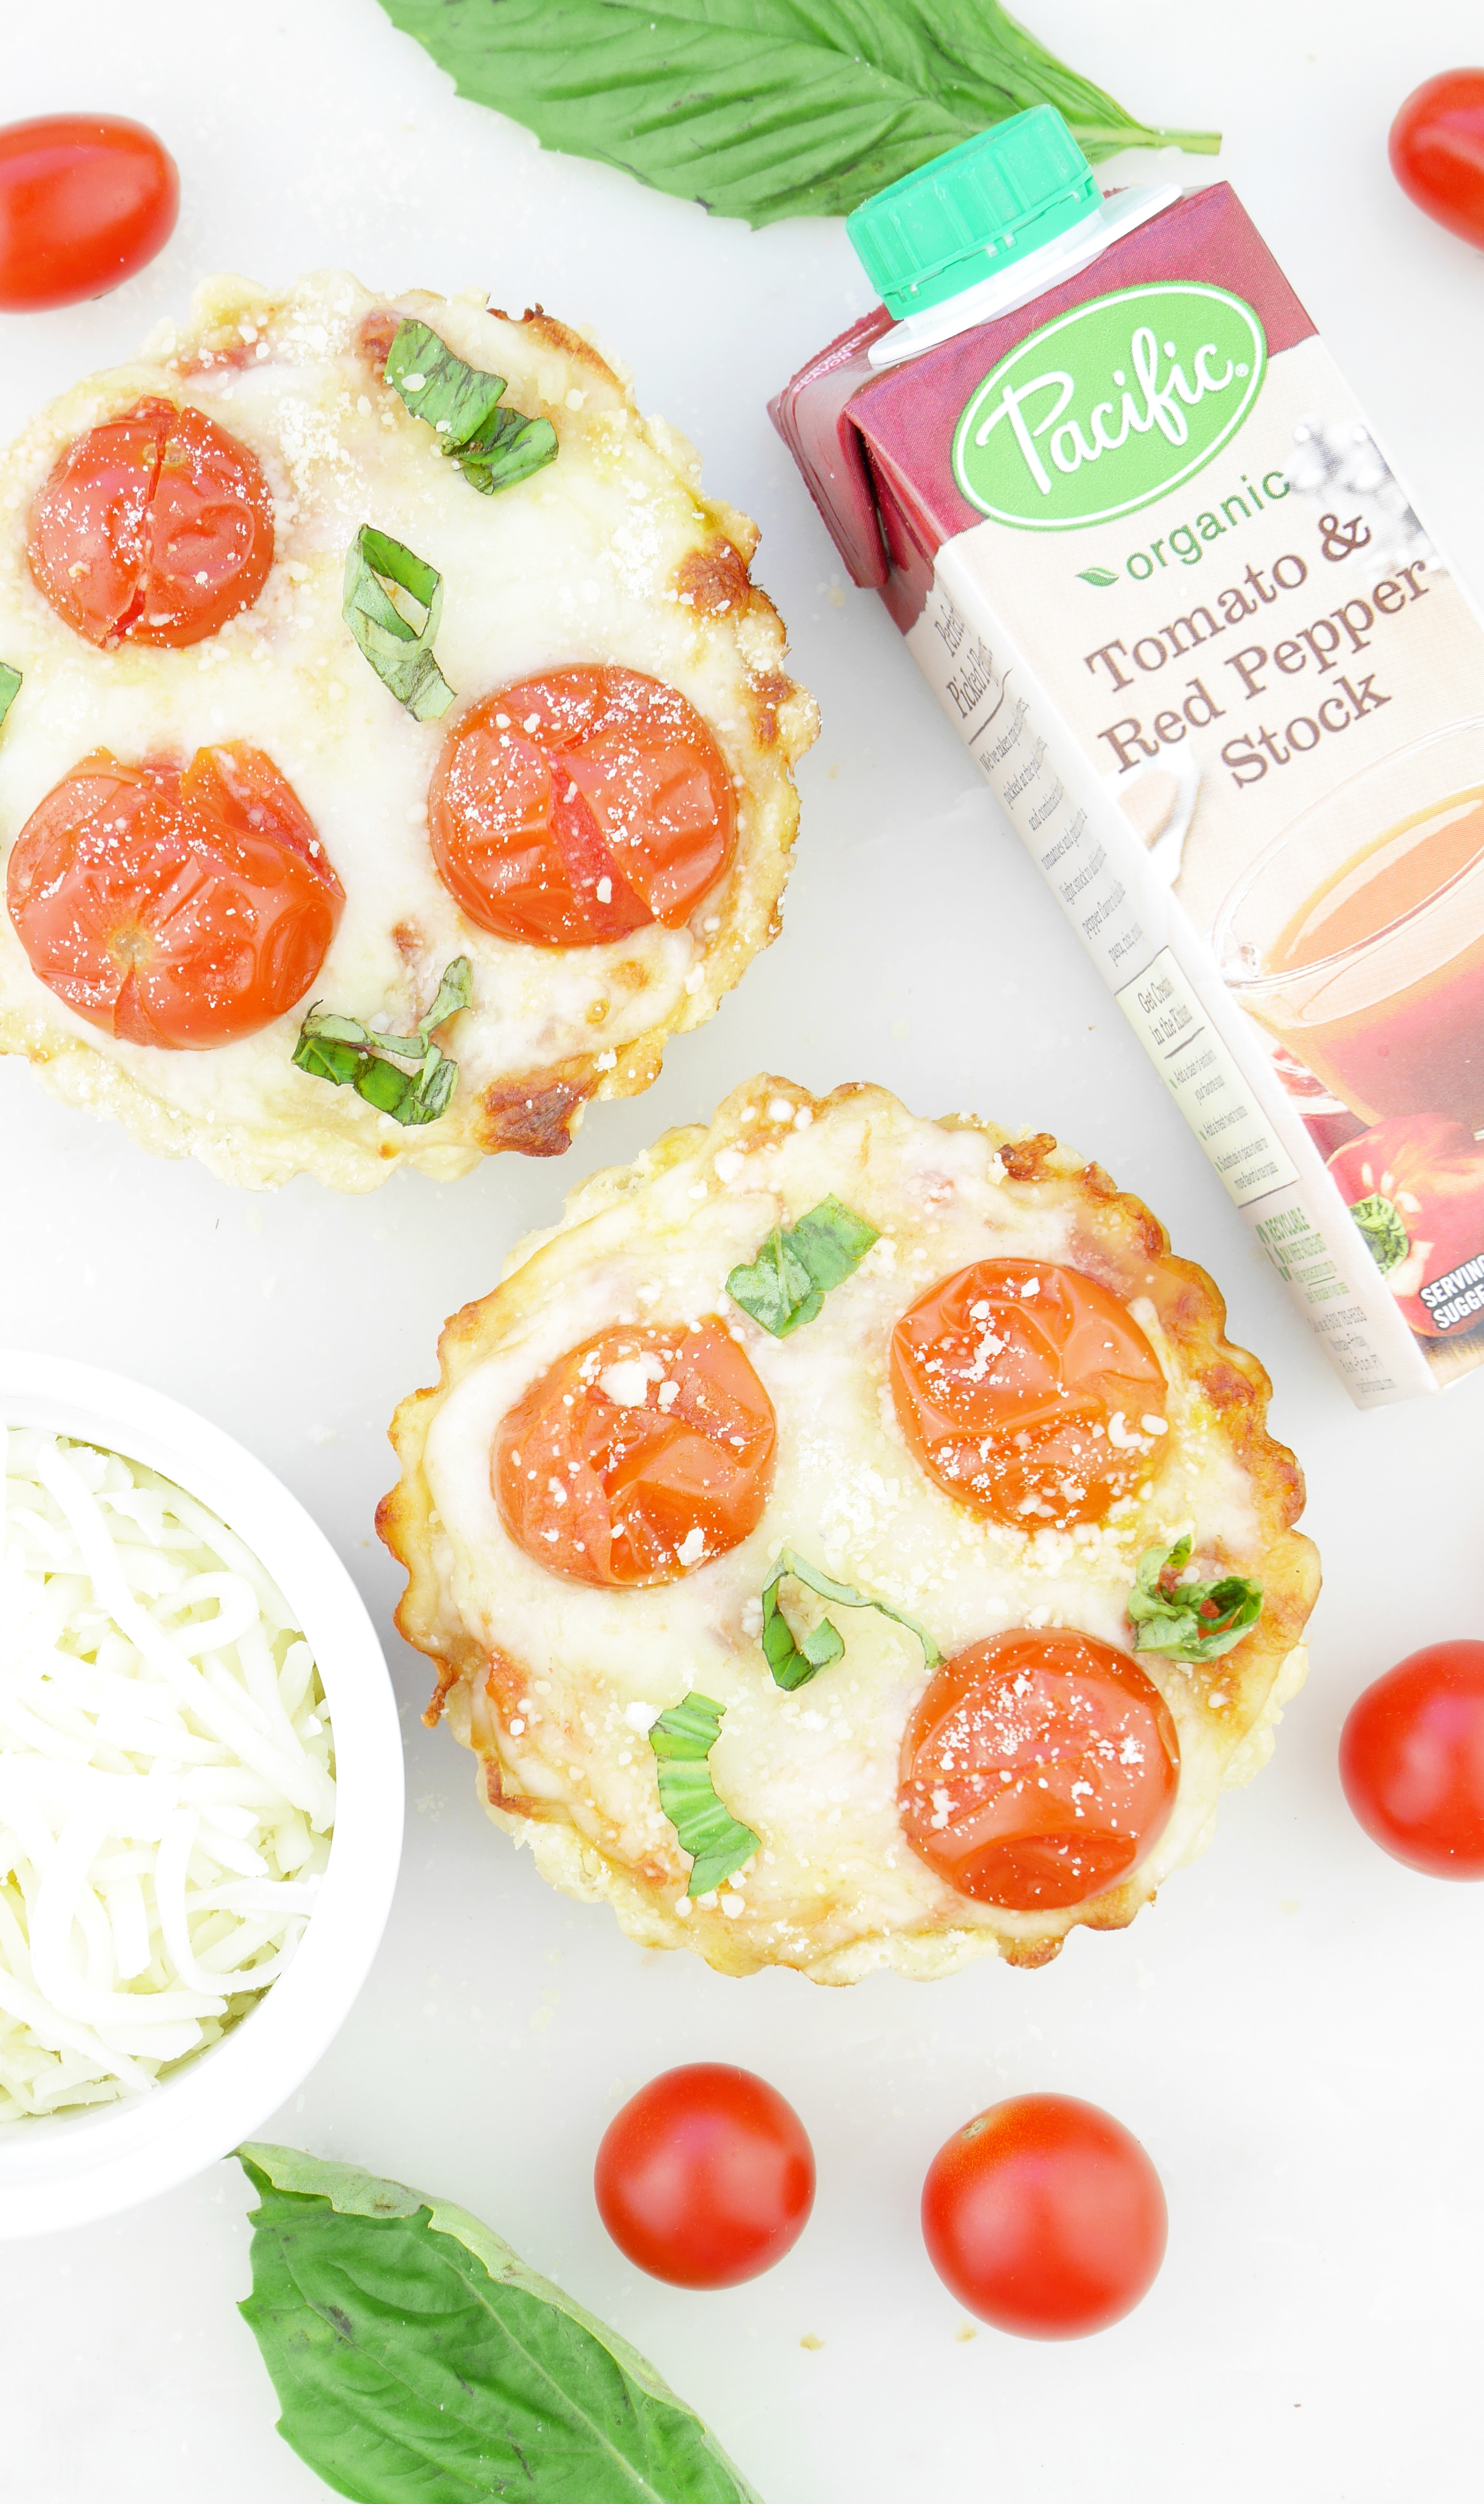 Pacific Foods Organic Tomato Stock Breakfast Tart